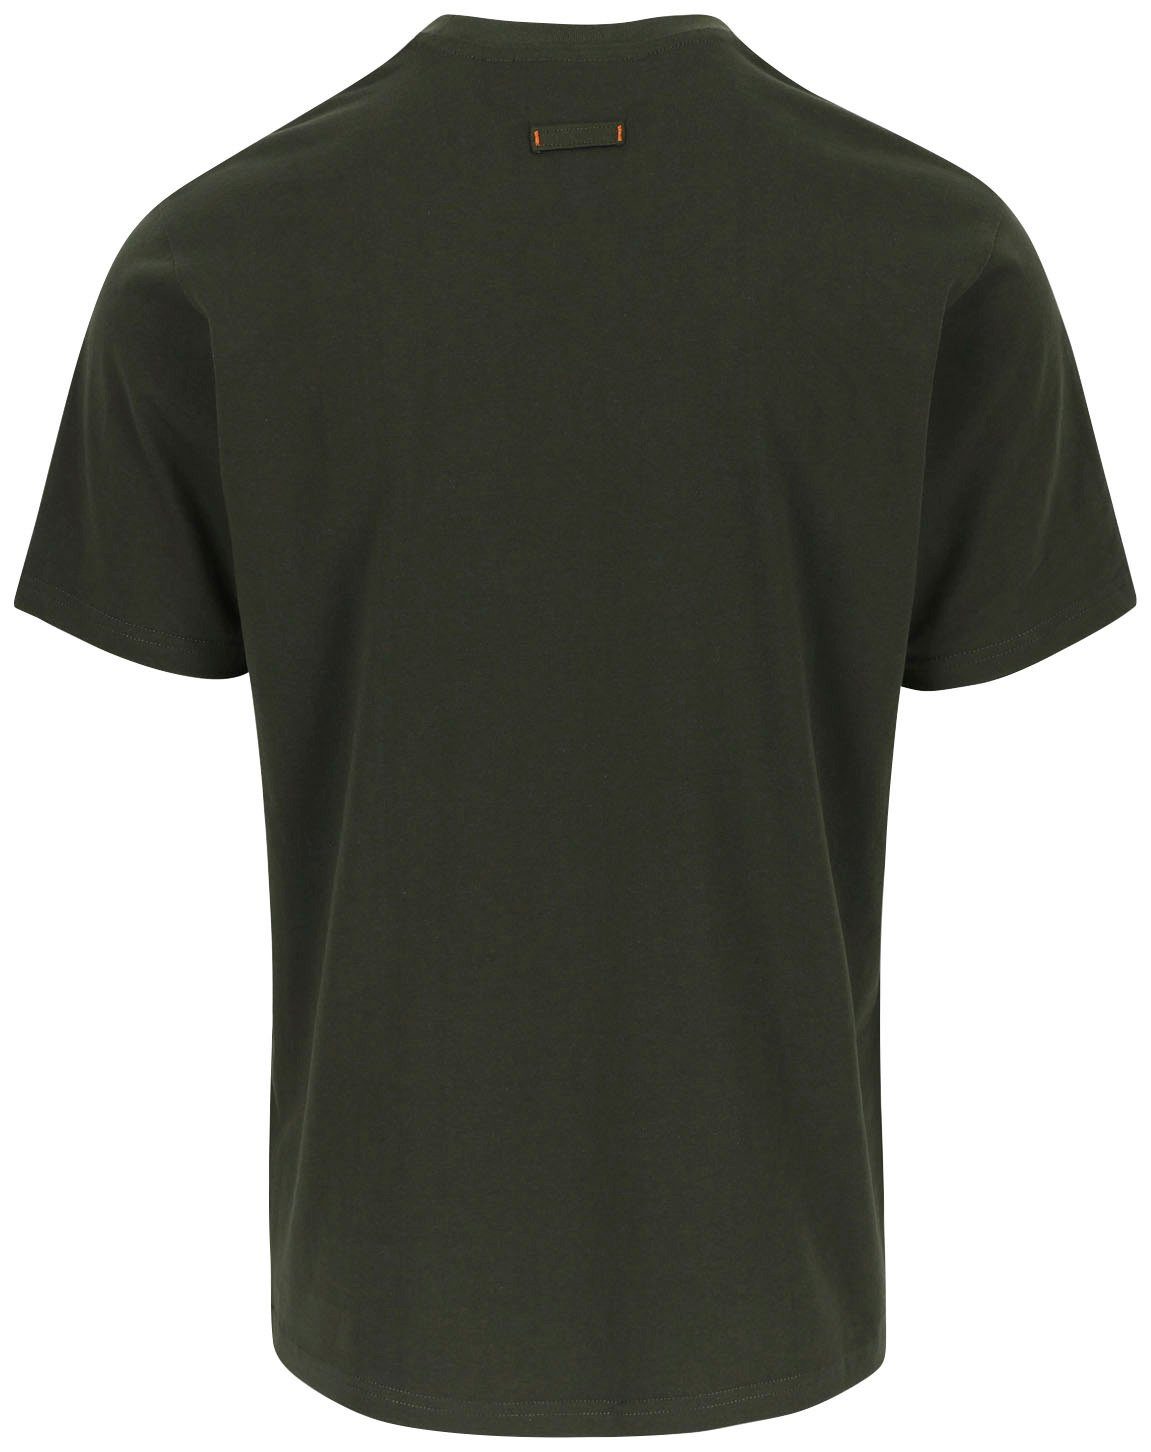 Tragegefühl Rundhals, angenehmes T-Shirt khaki mit Herock®-Aufdruck, Baumwolle, Herock ENI